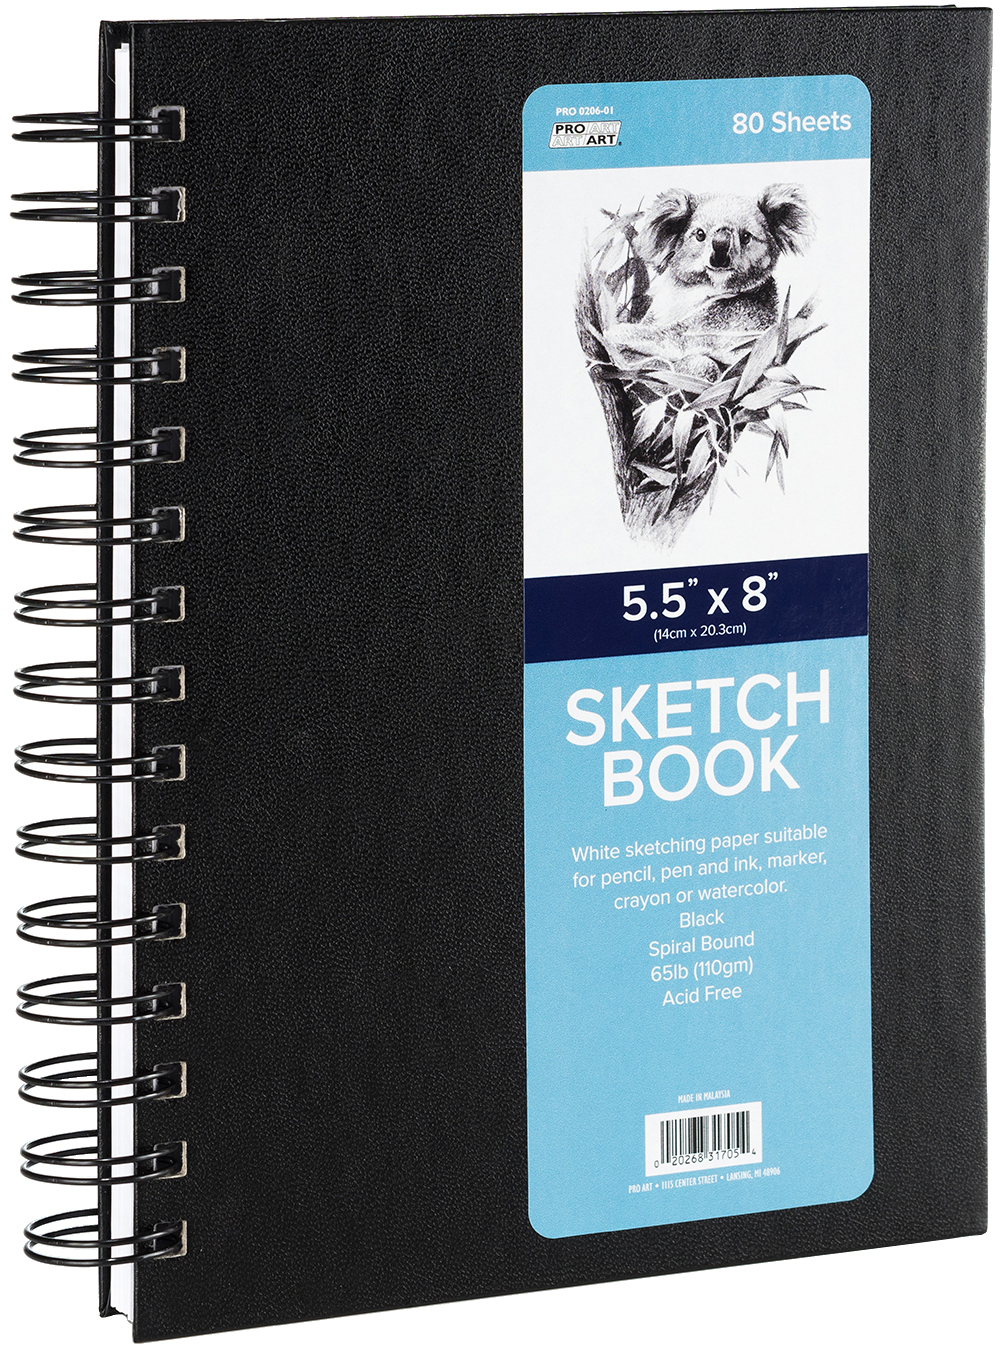 sketchbook pro alternatives